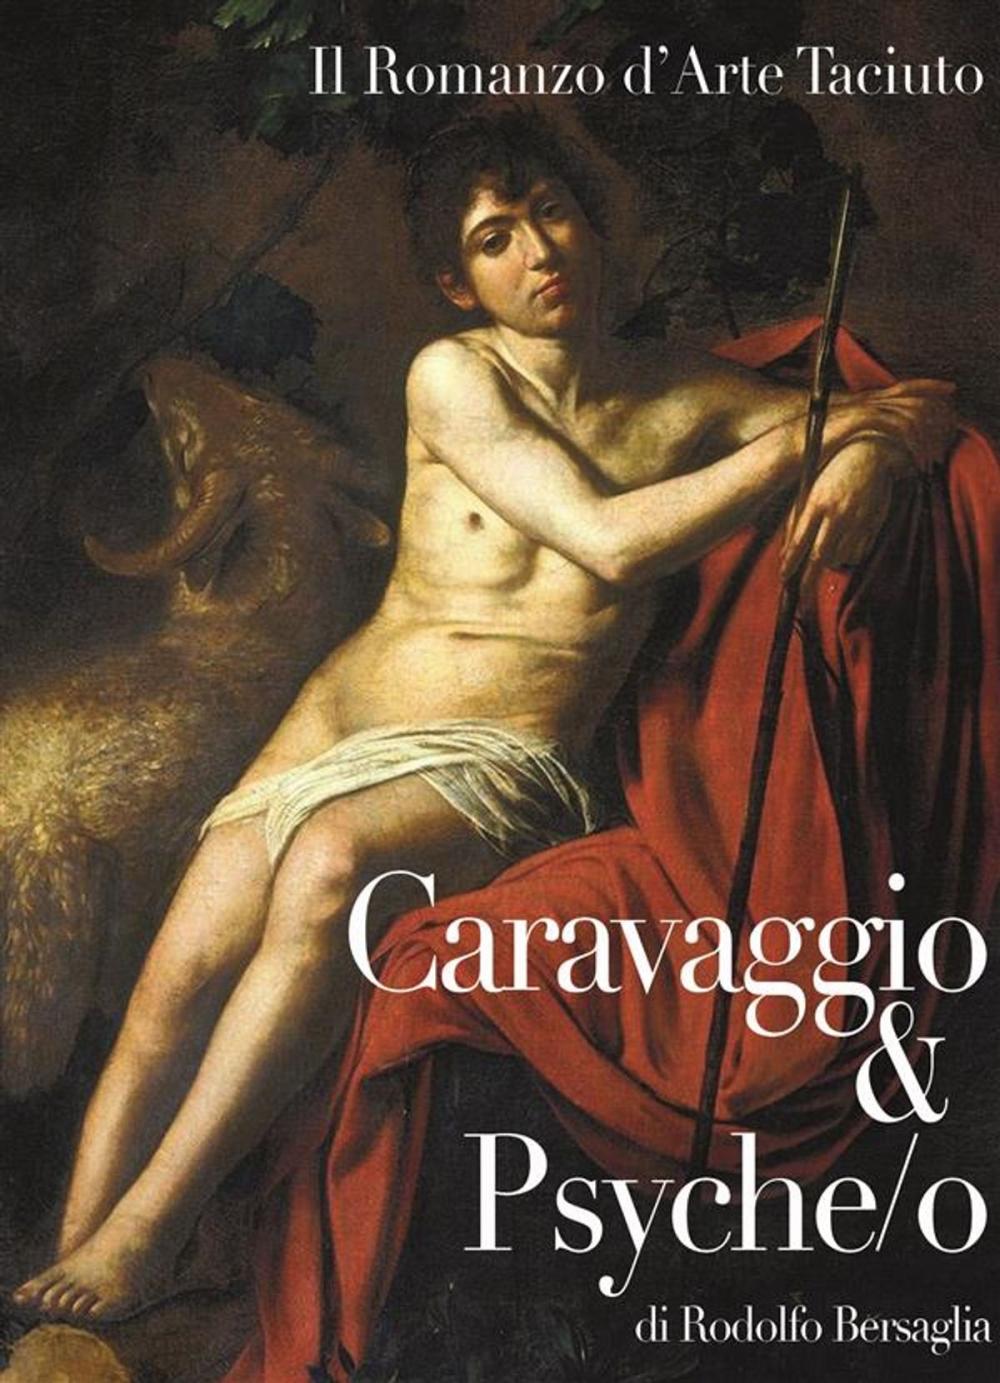 Big bigCover of Caravaggio & Psyche/o